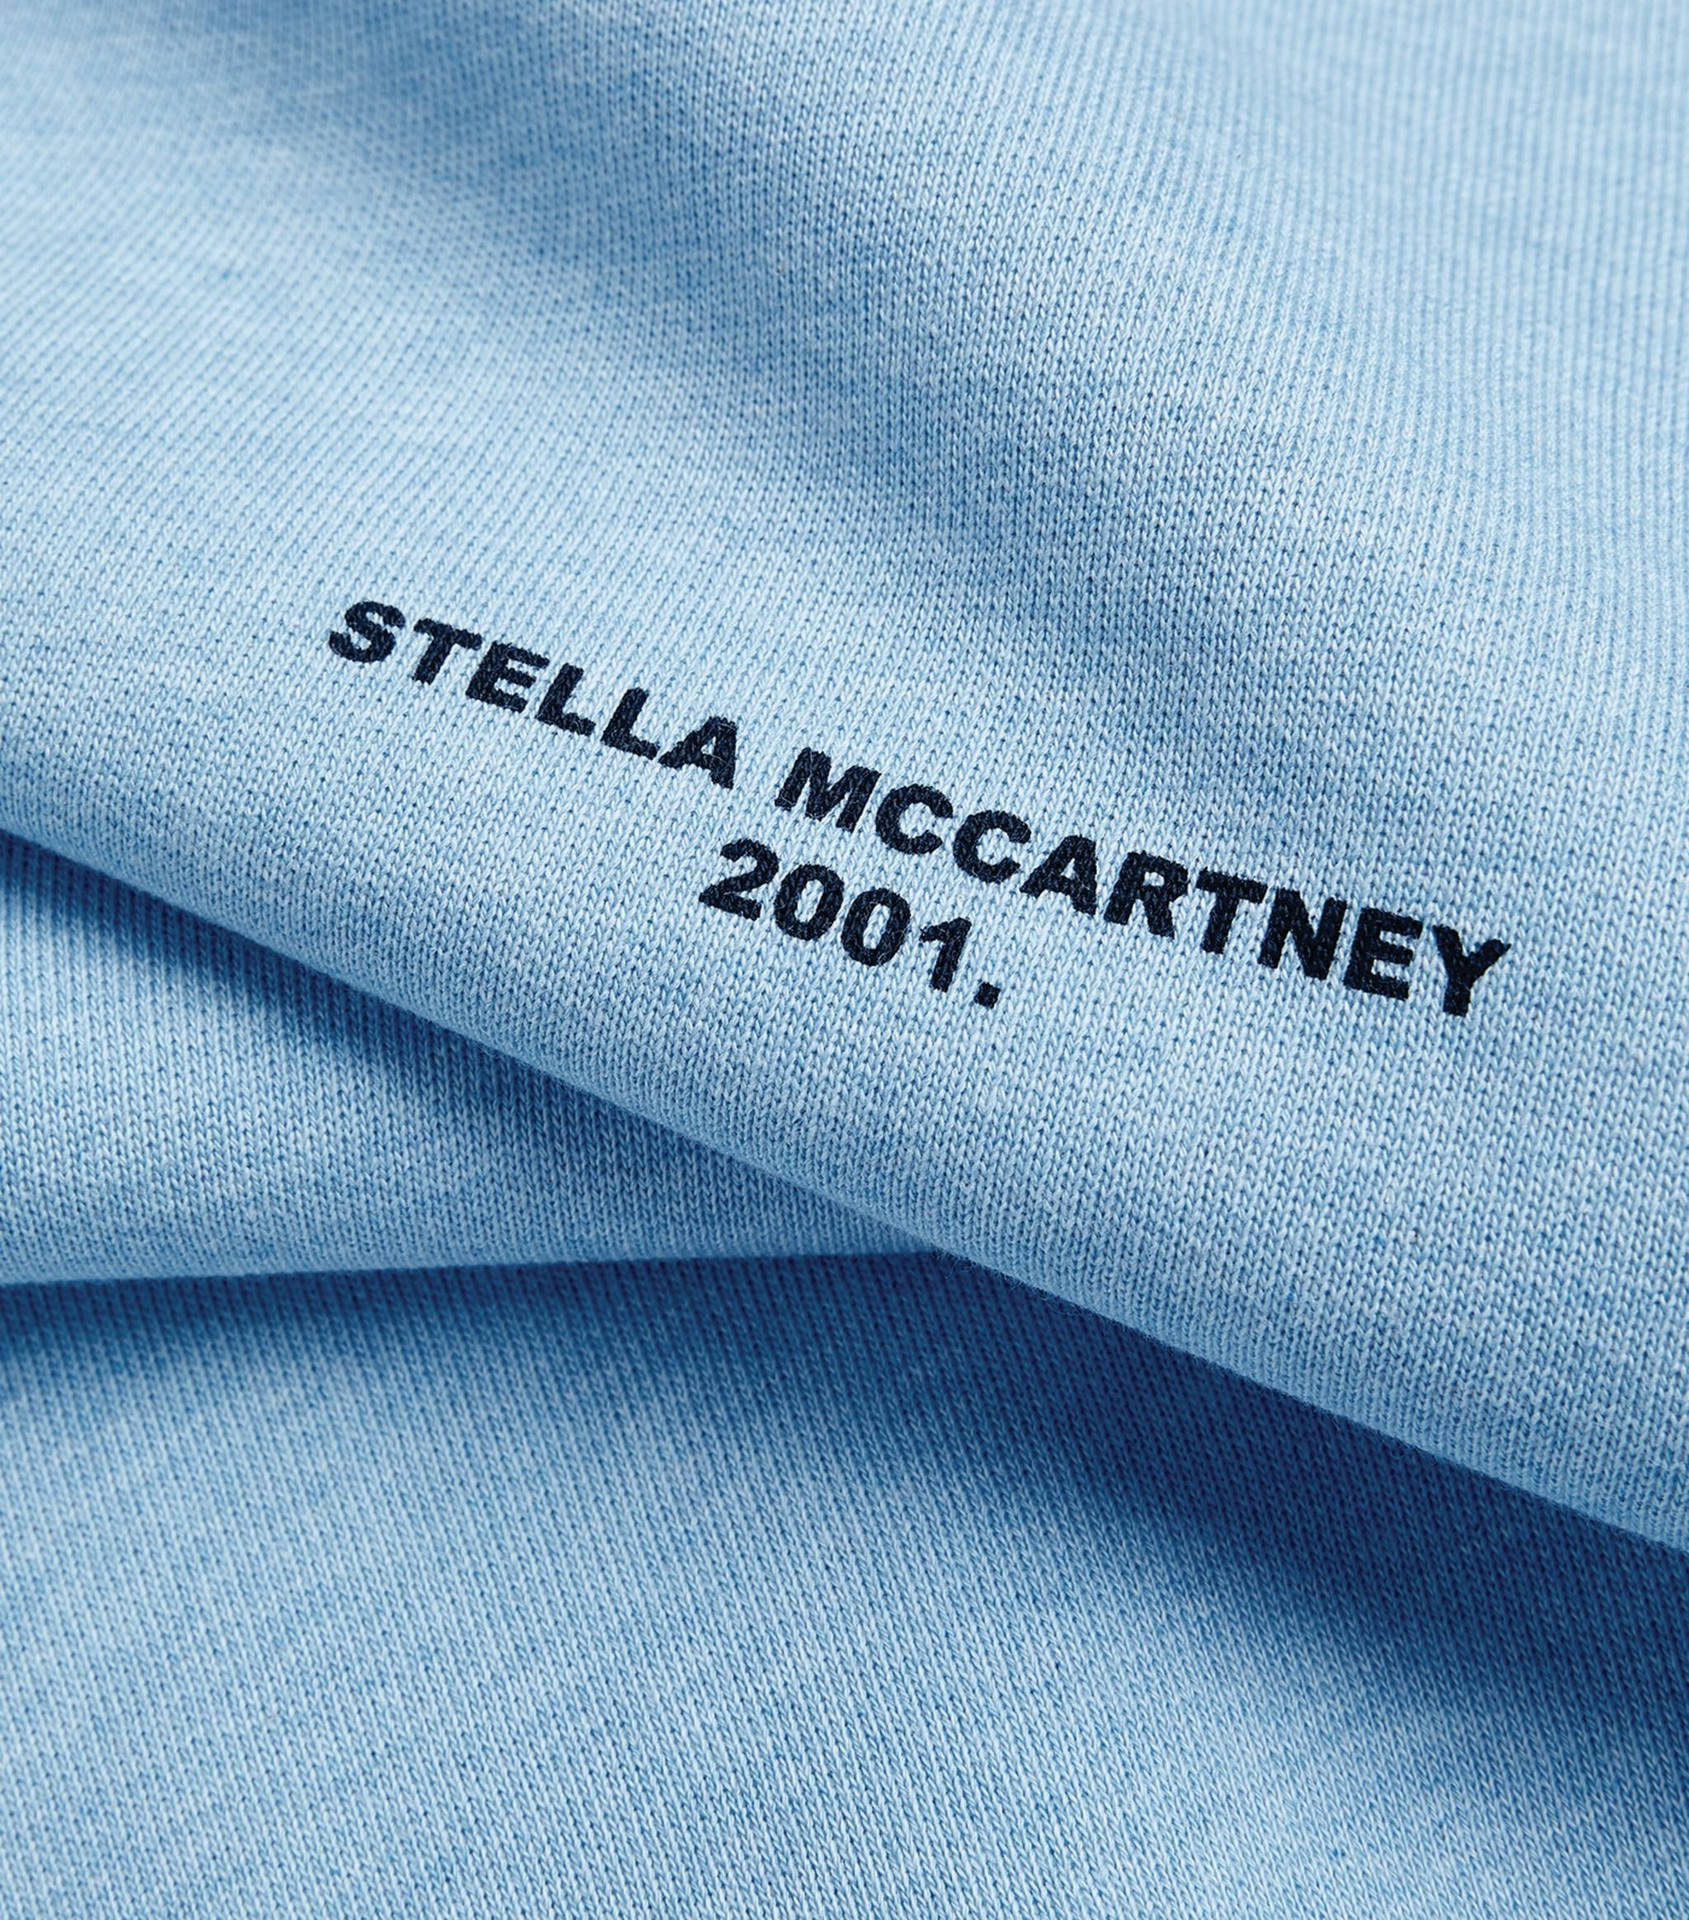 Tessutodi Design Con Il Logo Stella Mccartney Sfondo